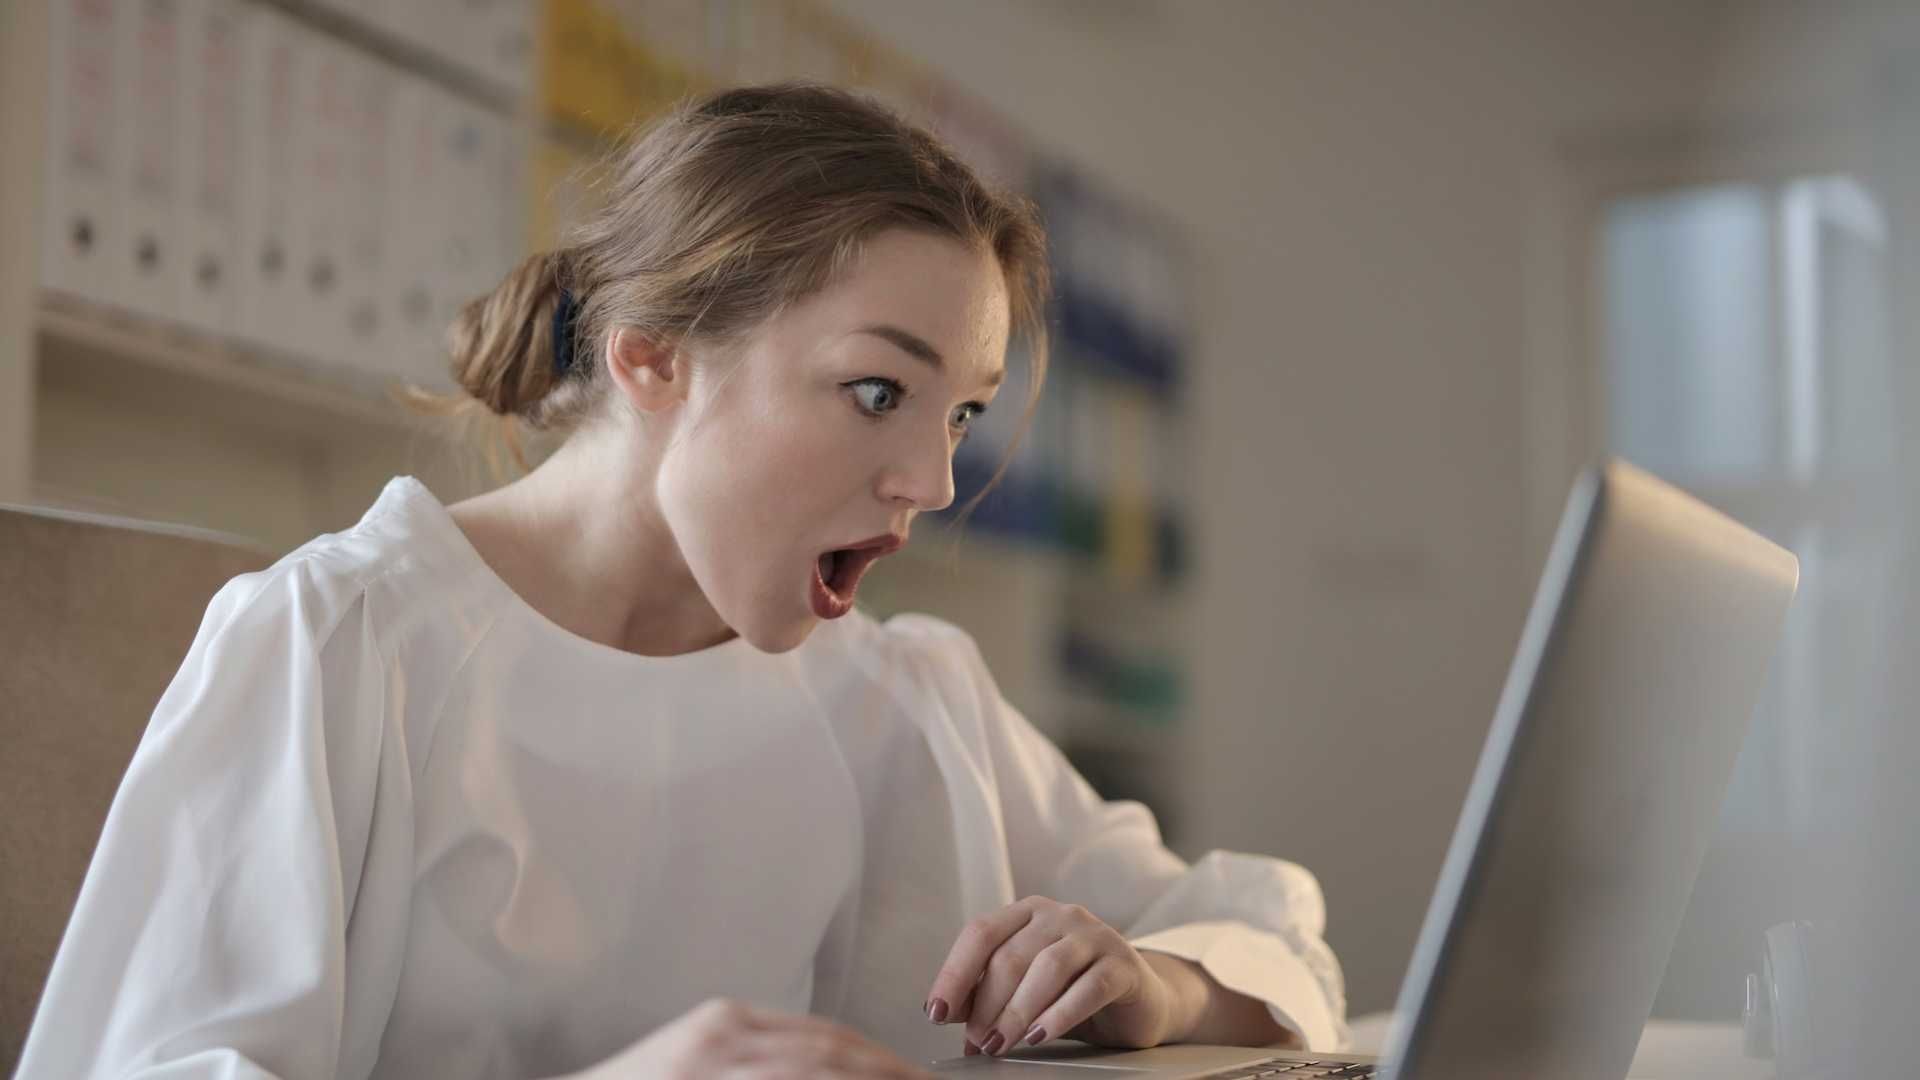 Mujer mira impresionada la pantalla de su computadora